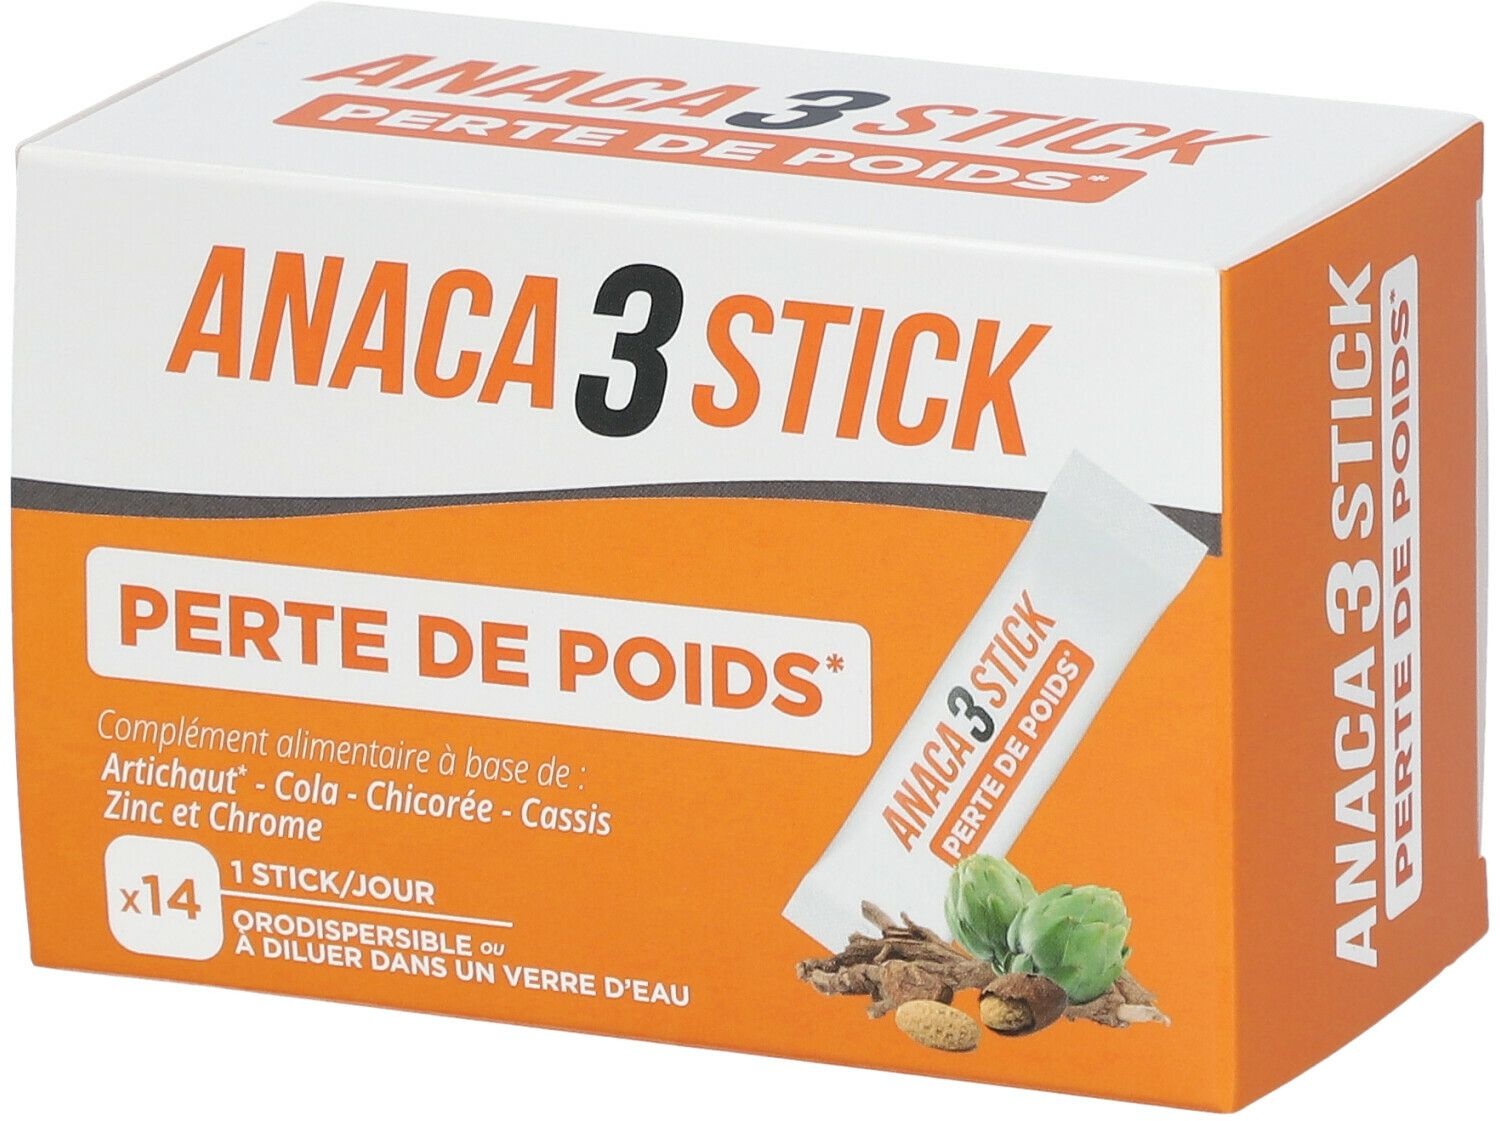 ANACA3 Stick Perte de Poids 14 pc(s) sachet(s)